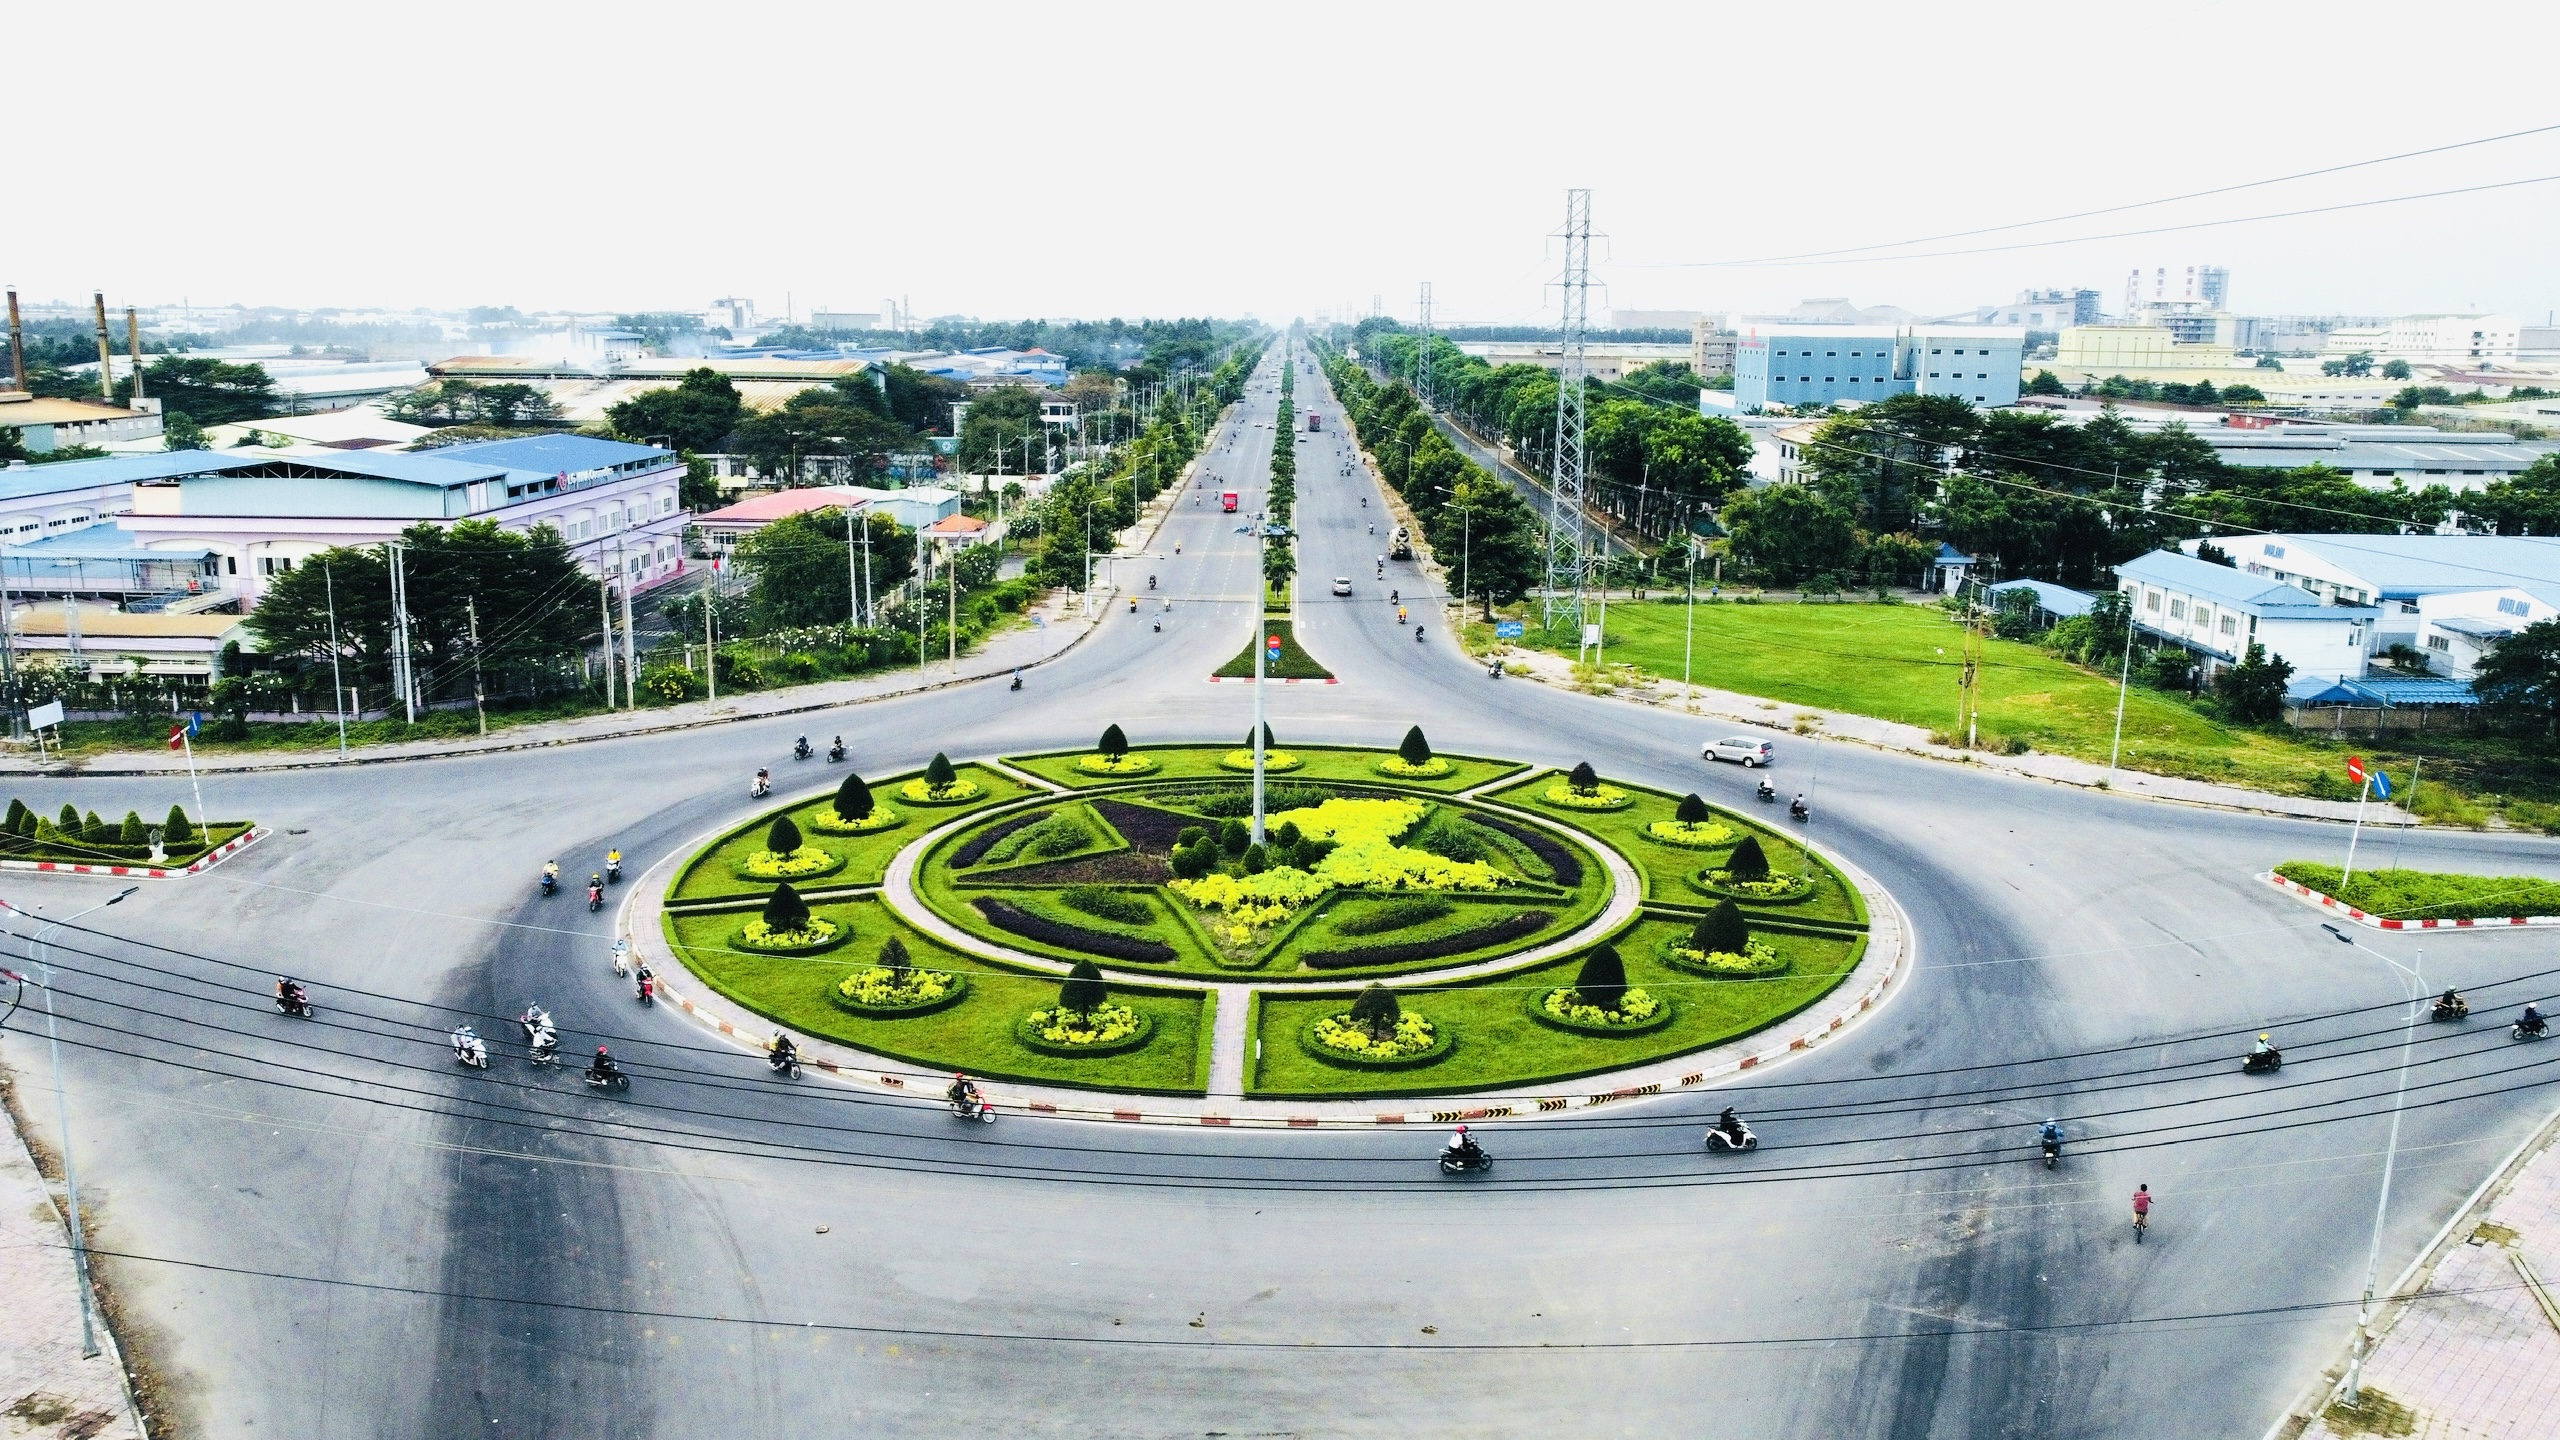 đẩy nhanh đầu tư cơ sở hạ tầng kỹ thuật giúp huyện Nhơn Trạch sớm hoàn thành mục tiêu lên thành phố.